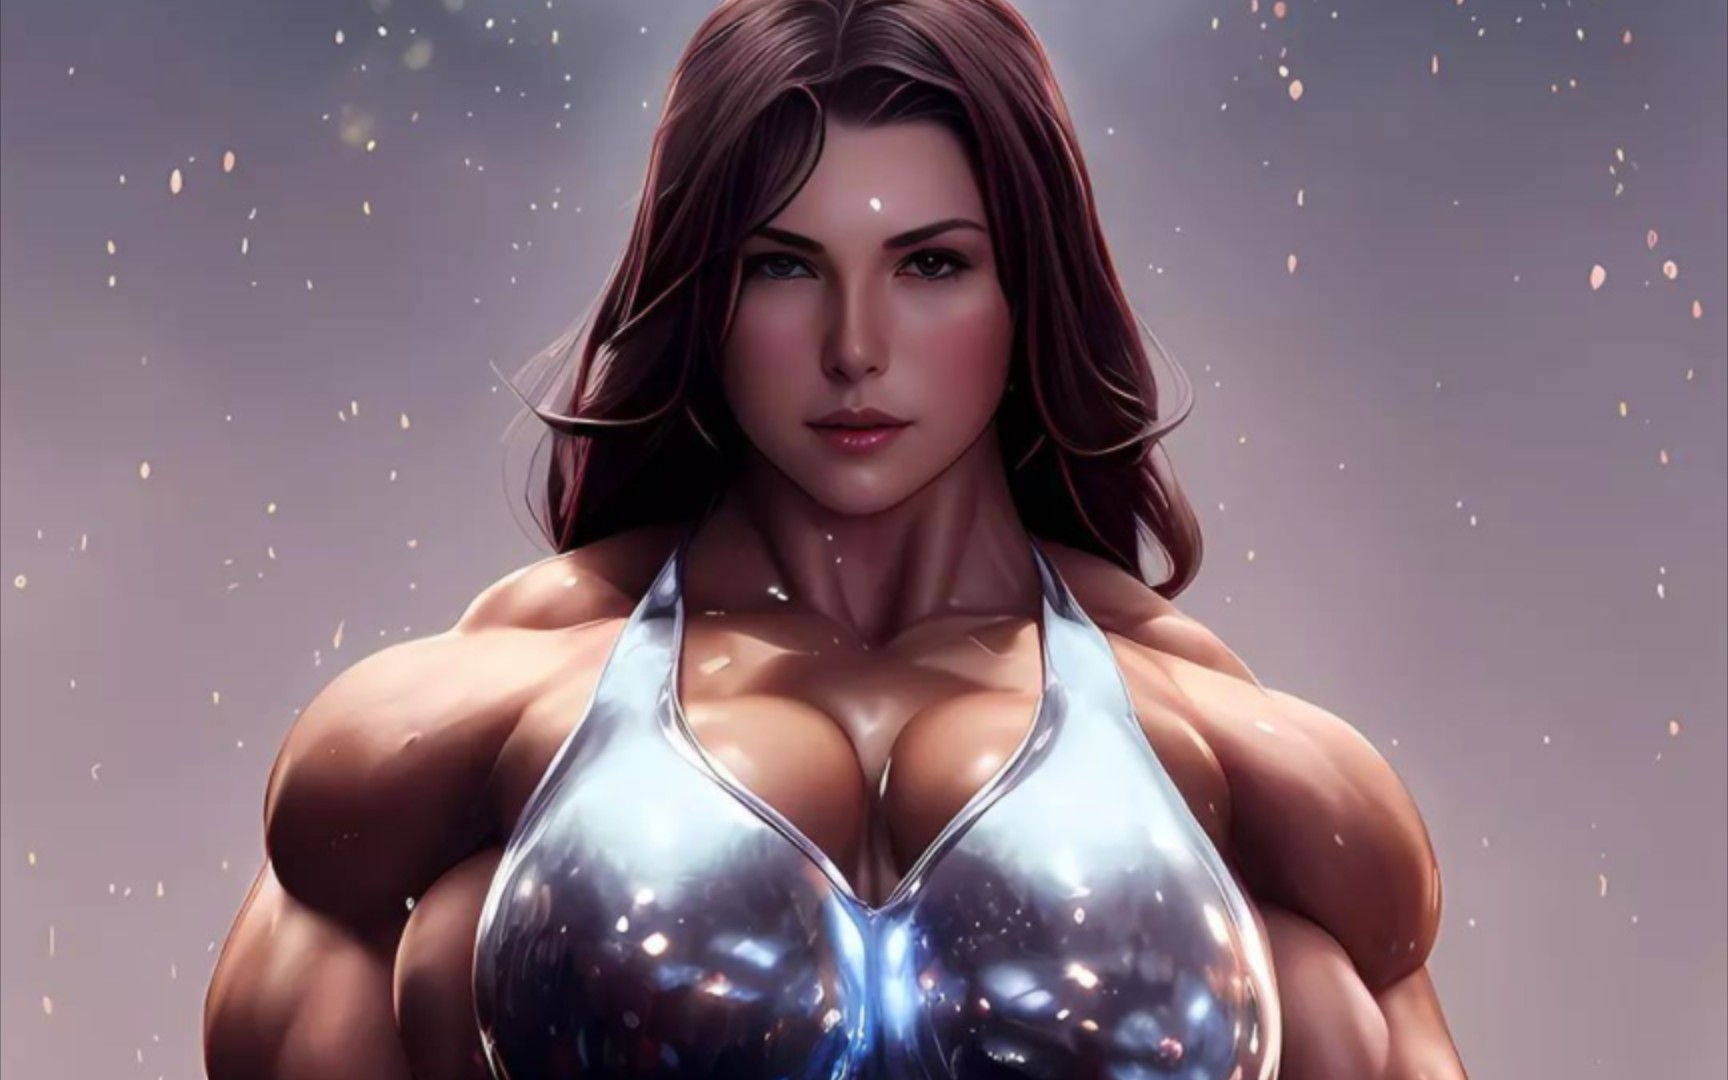 最强壮的女人肌肉图片